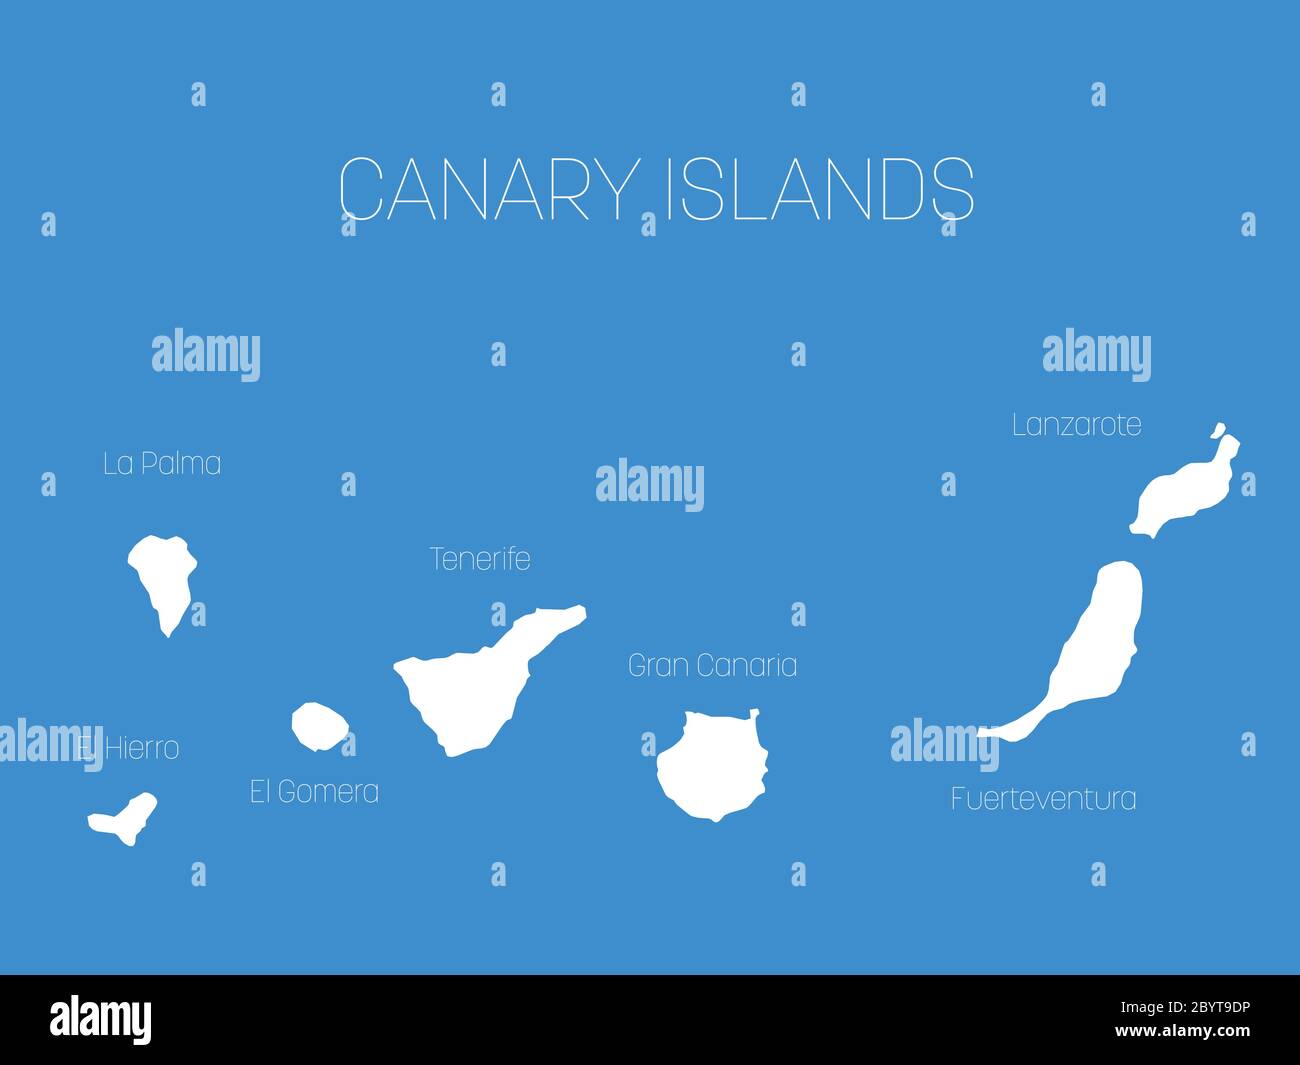 Karte der Kanarischen Inseln, Spanien, mit Etiketten von jeder Insel - El Hierro, La Palma, La Gomera, Teneriffa, Gran Canaria, Fuerteventura und Lanzarote. Weiße Vektor Silhouette auf blauem Hintergrund. Stock Vektor